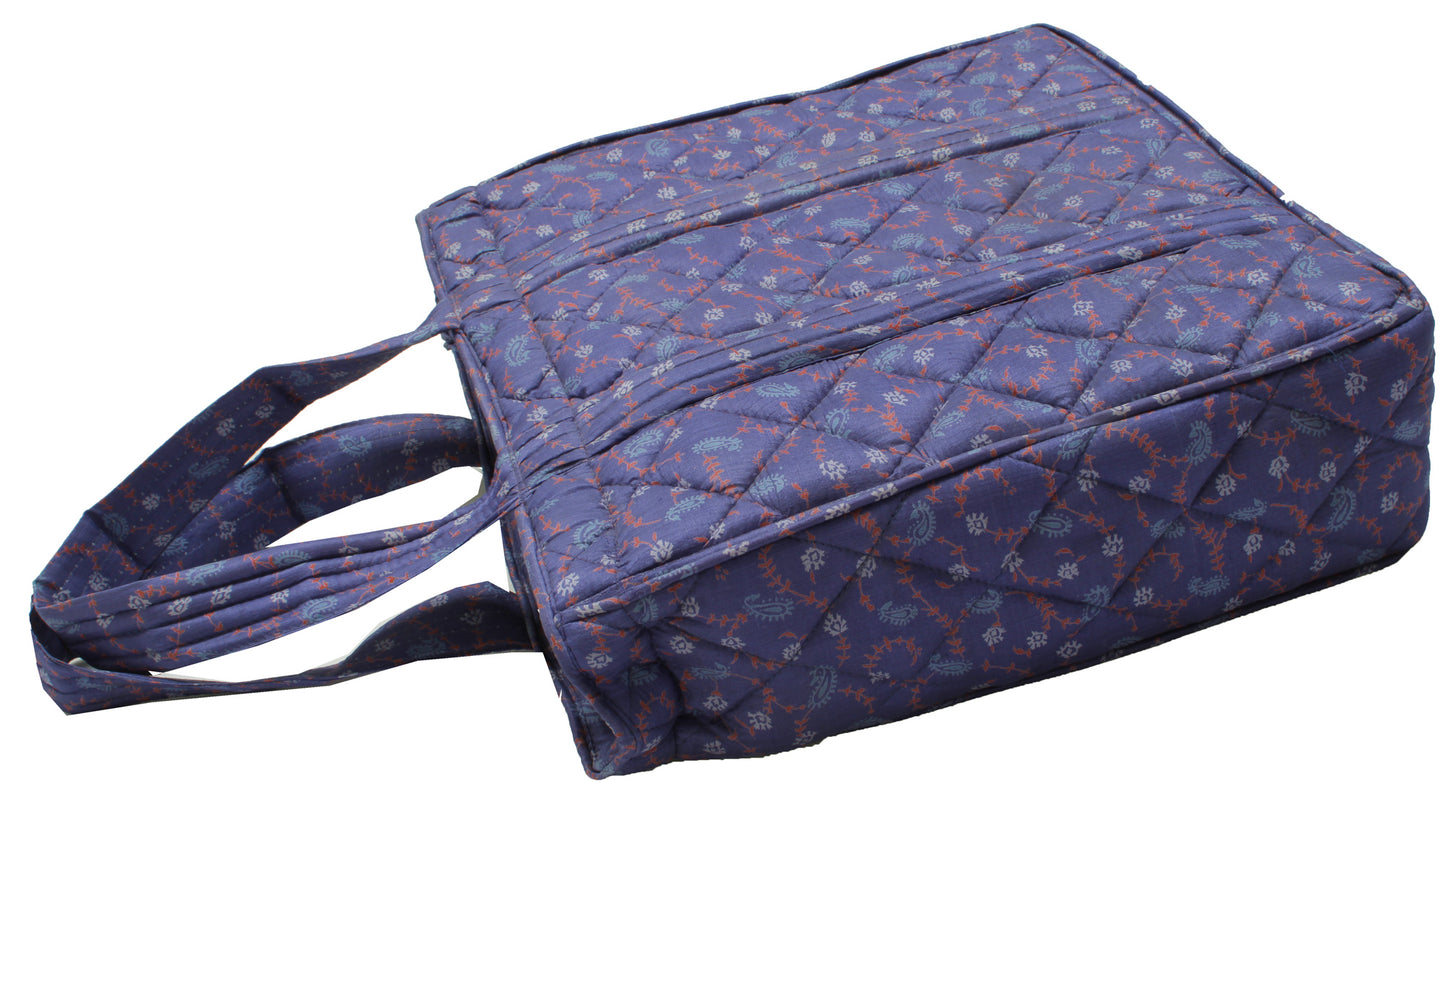 Sushila Vintage Blue Indian Tote Bag 100% Pure Silk Printed Handbag Shoulder Bag